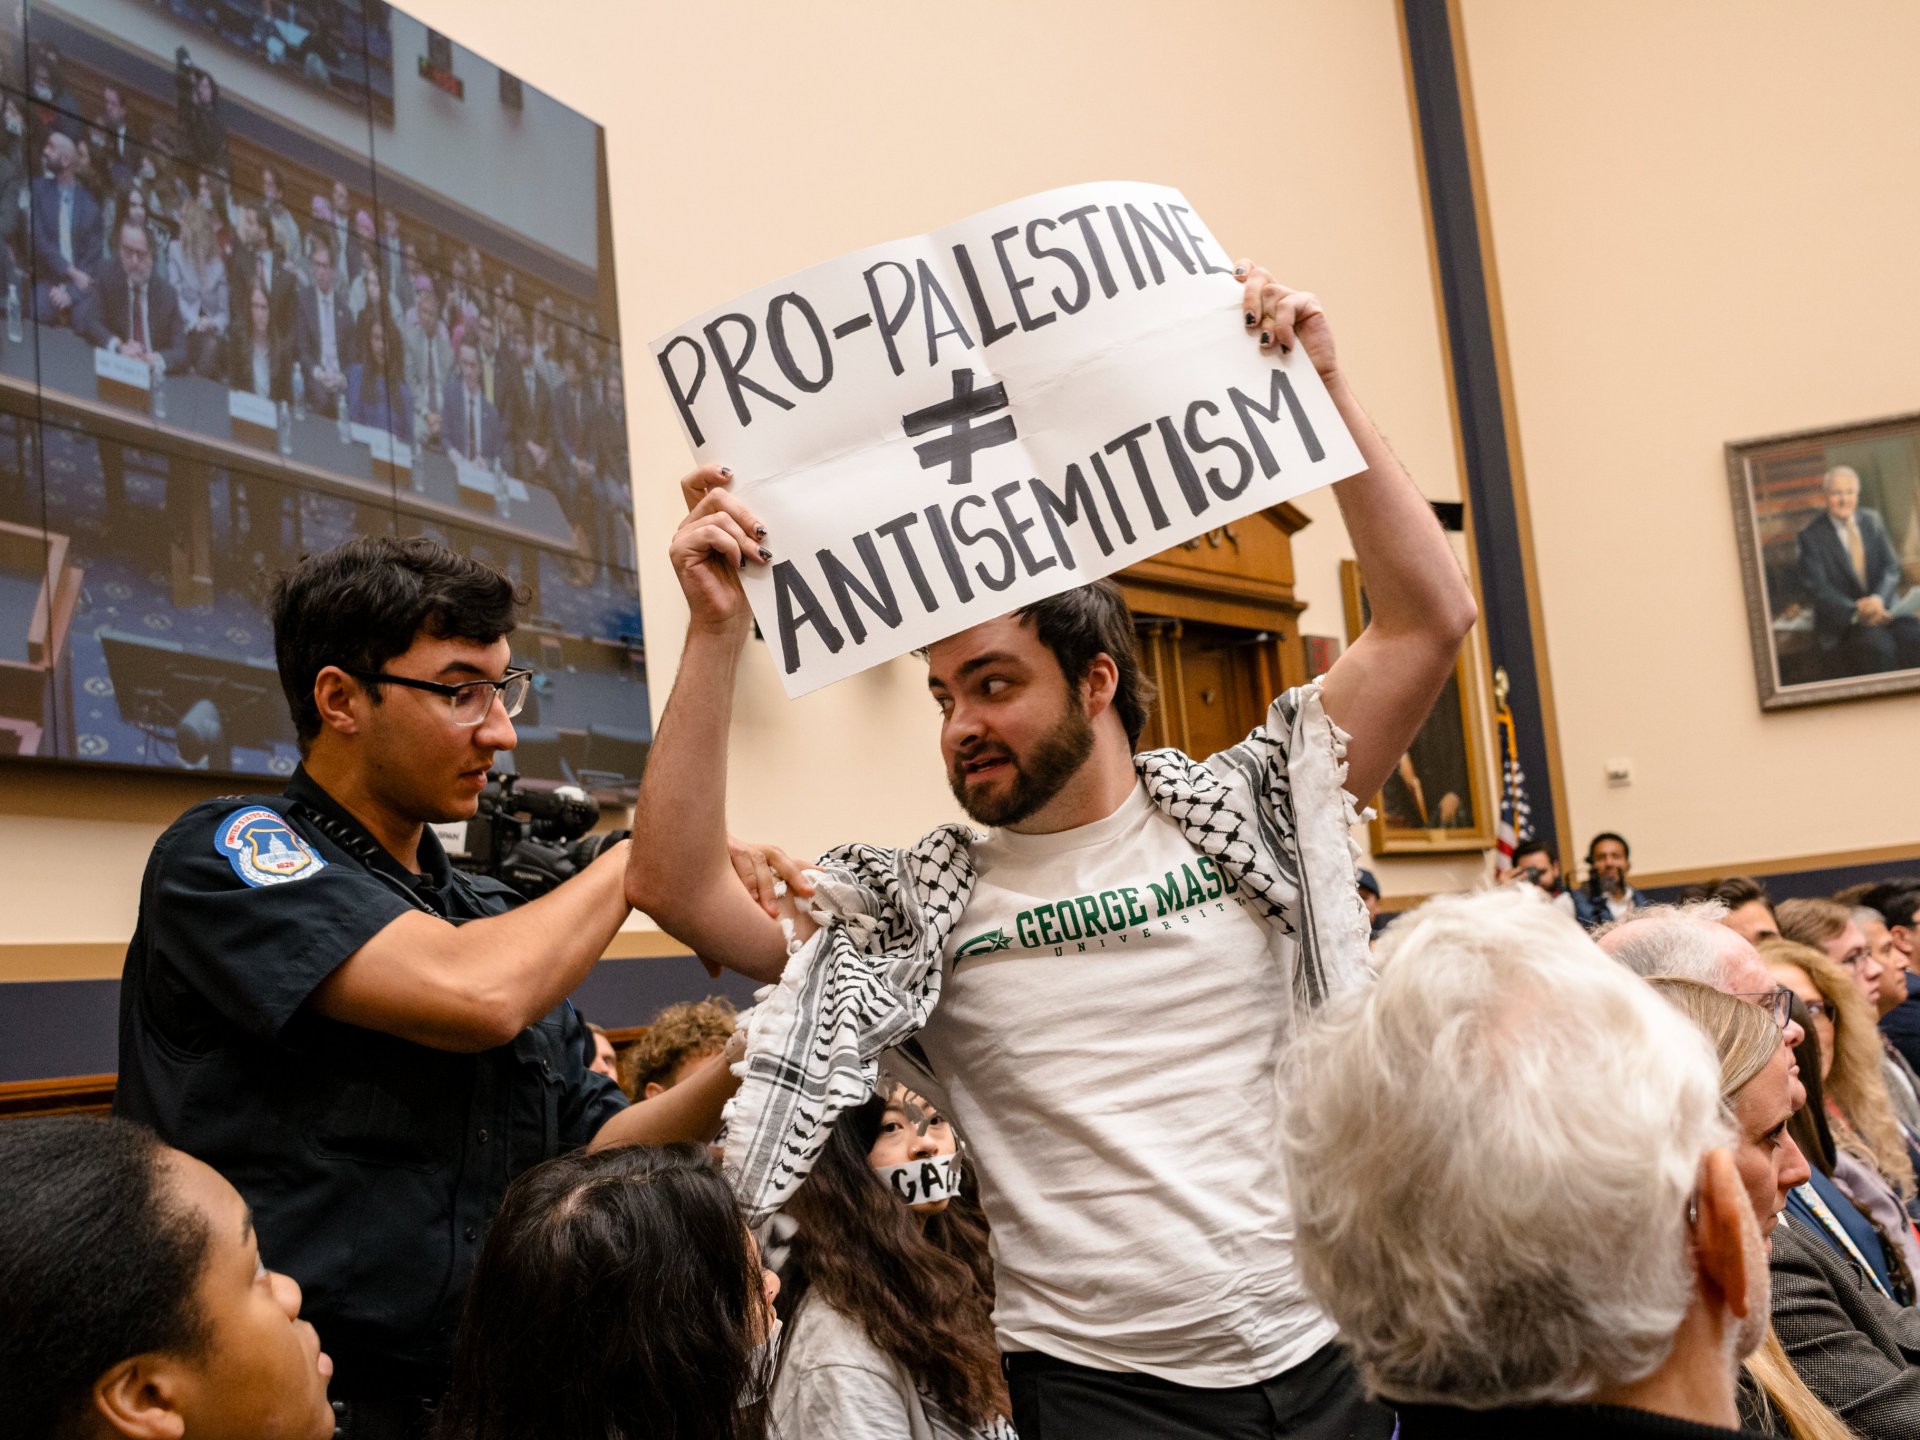 اعتقال طلاب قاطعوا جلسة للكونغرس احتجاجا على دعم إسرائيل | أخبار – البوكس نيوز